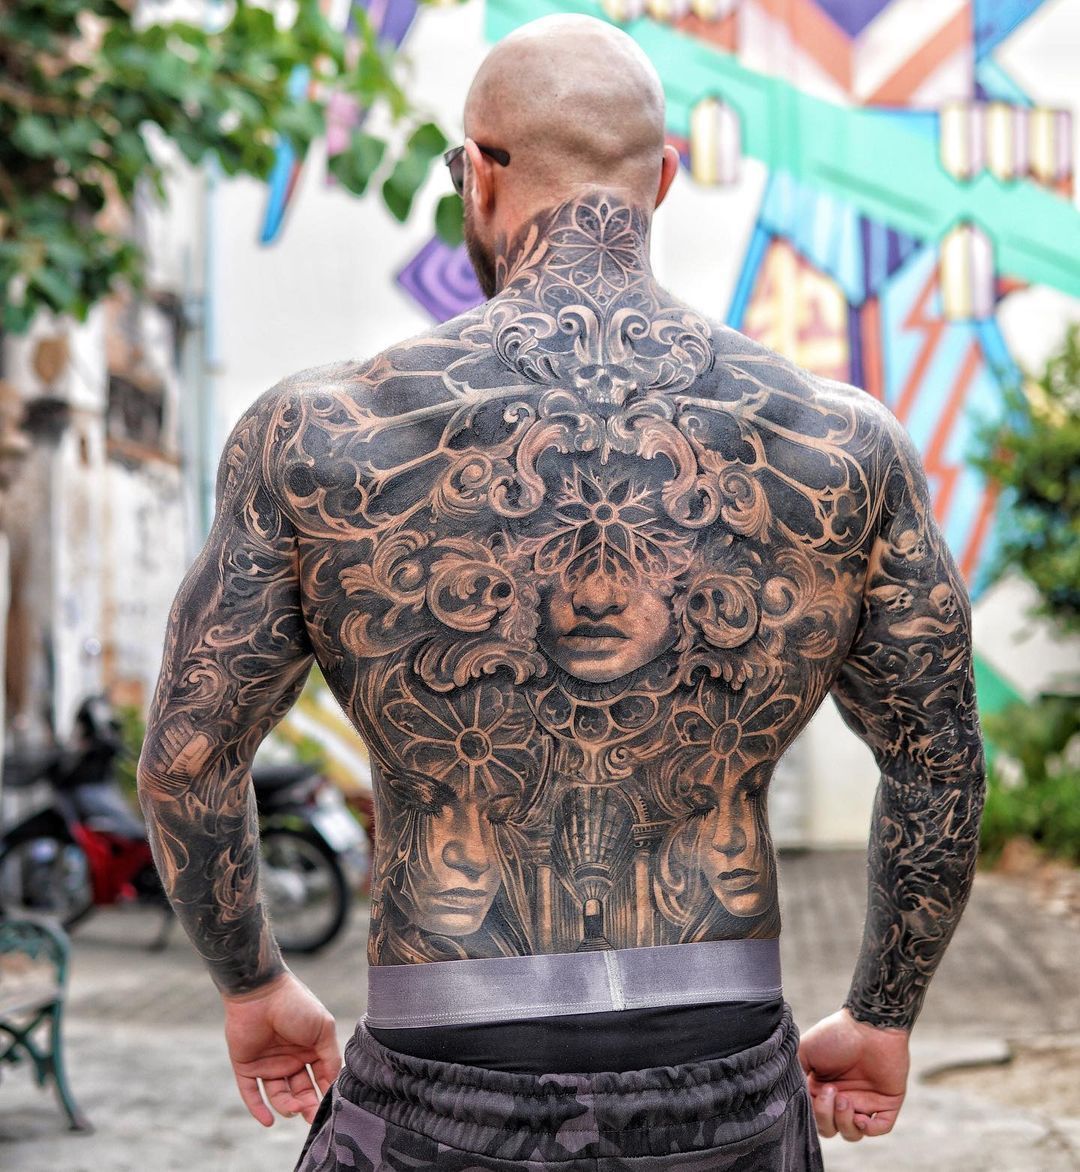 Как часто занимающиеся спортом делают татуировки?